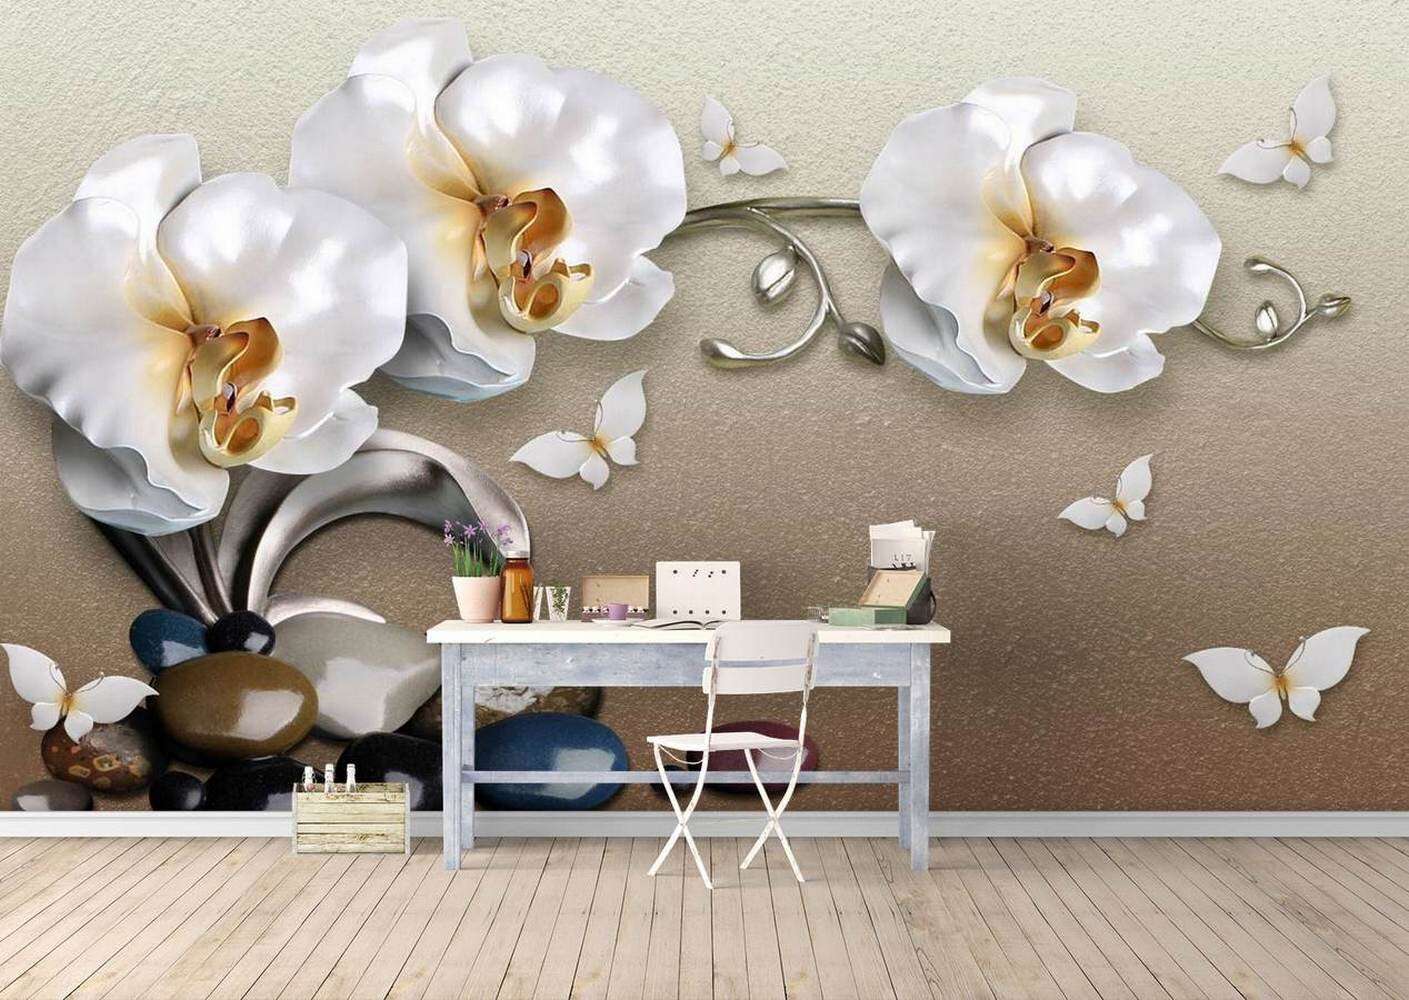 Обои для стен с орхидеями, используем в интерьере цветочную тематику. фотообои с изображением орхидей в интерьере: нежные цветы на ваших стенах обои орхидеи в интерьере